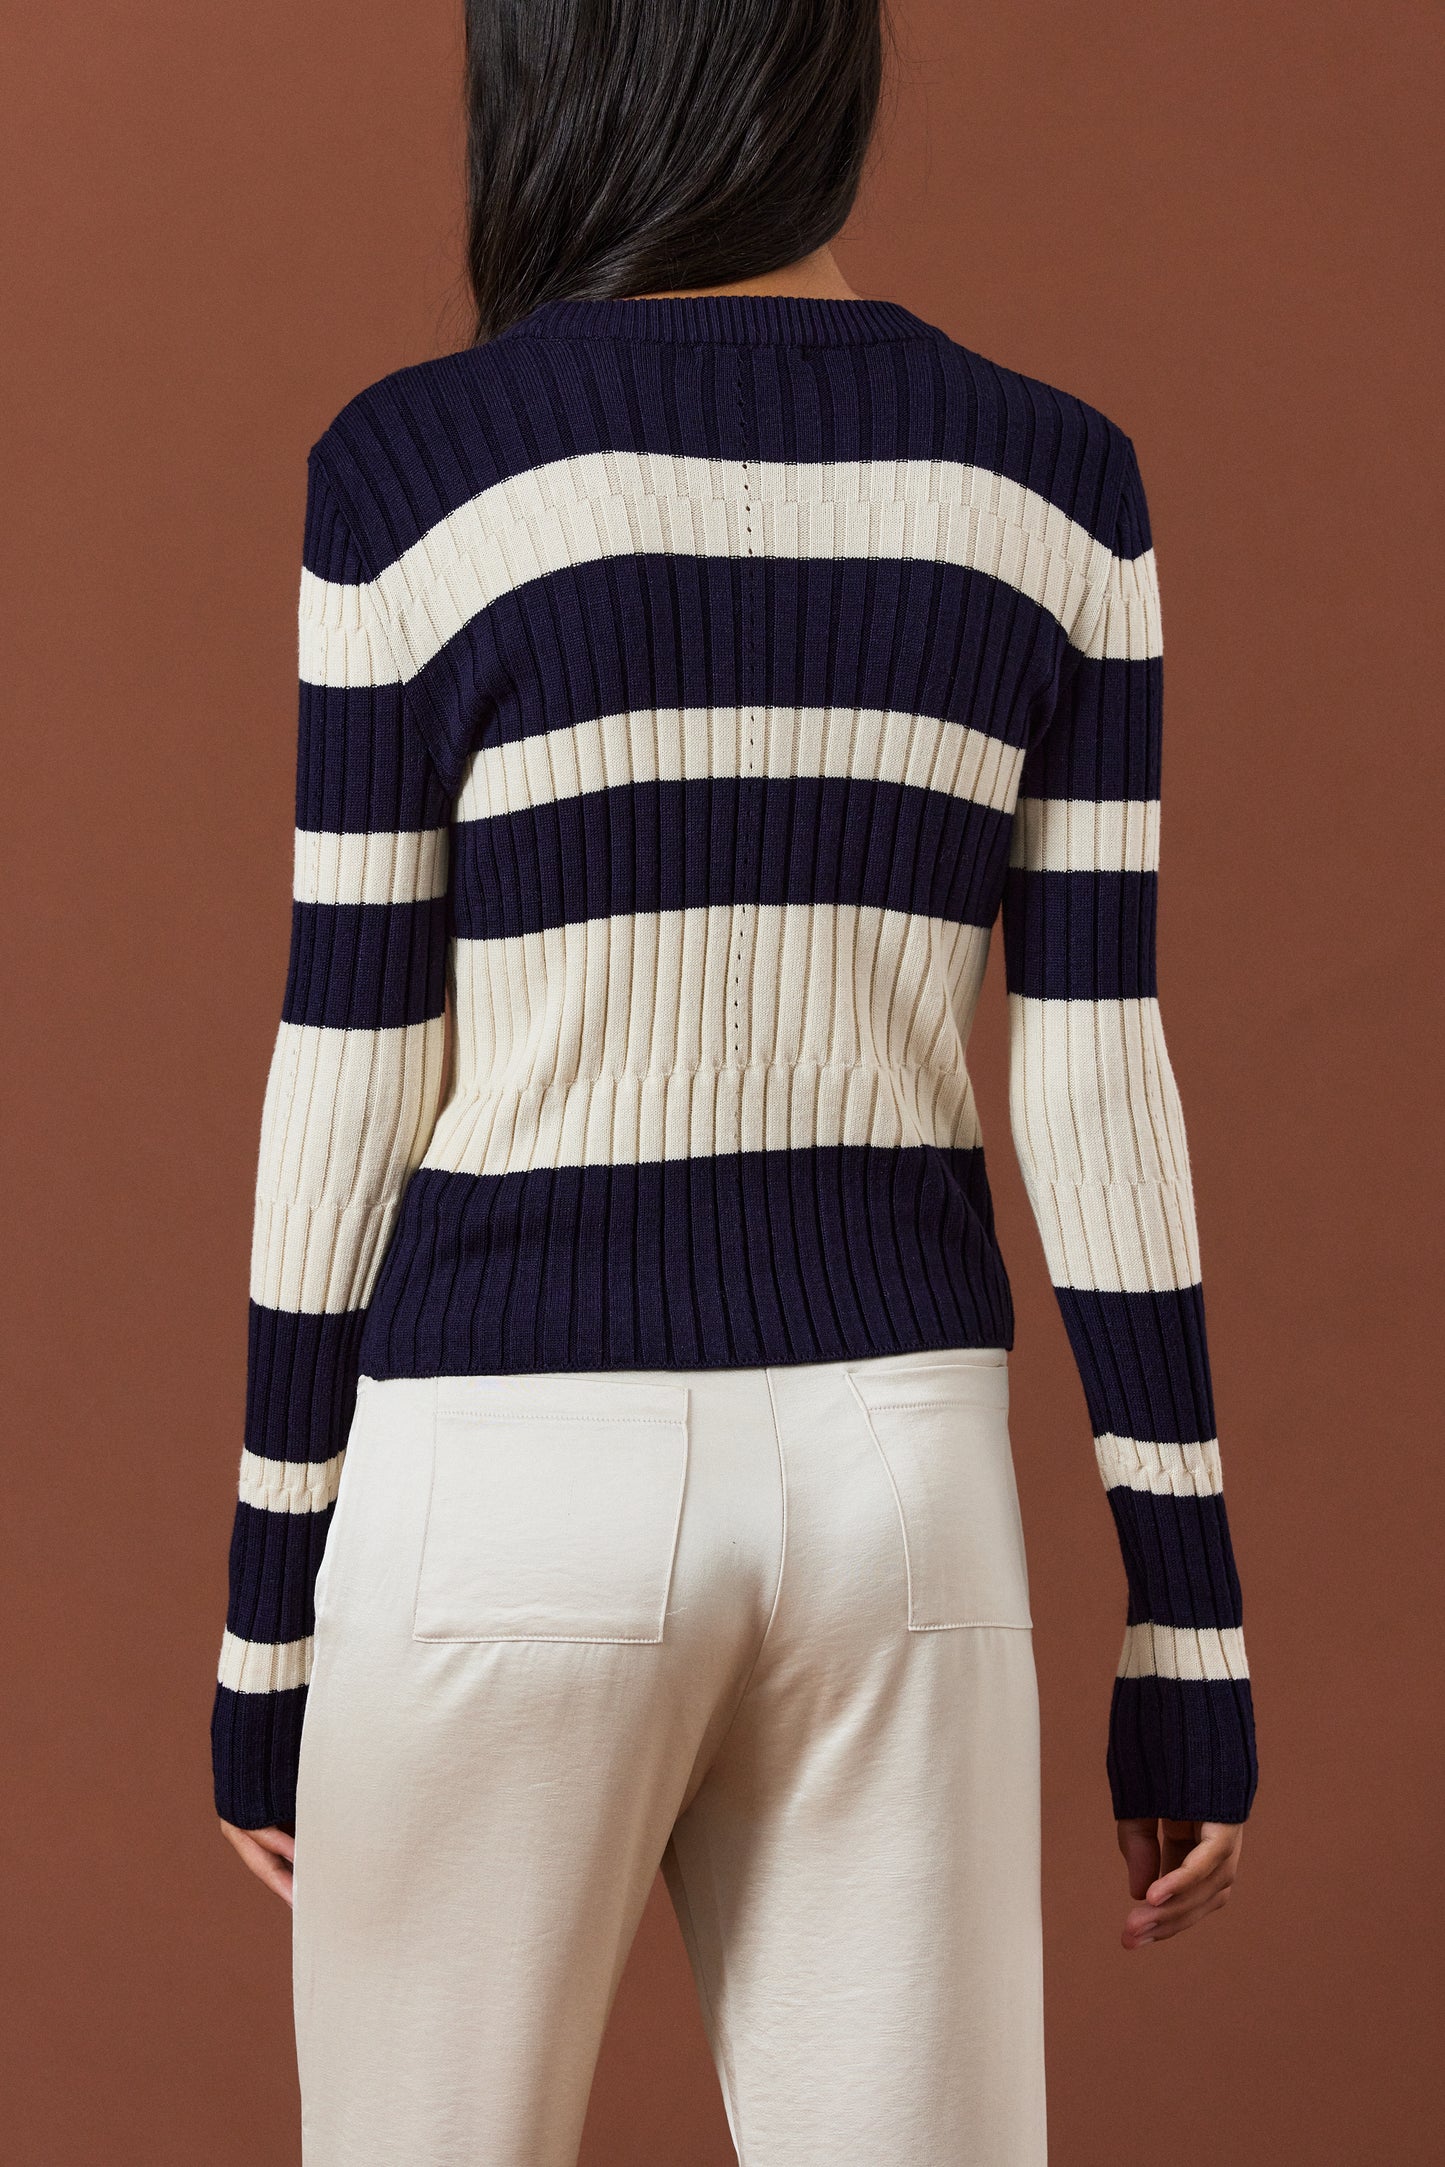 Curved Stripe Knit, Ivory & Navy